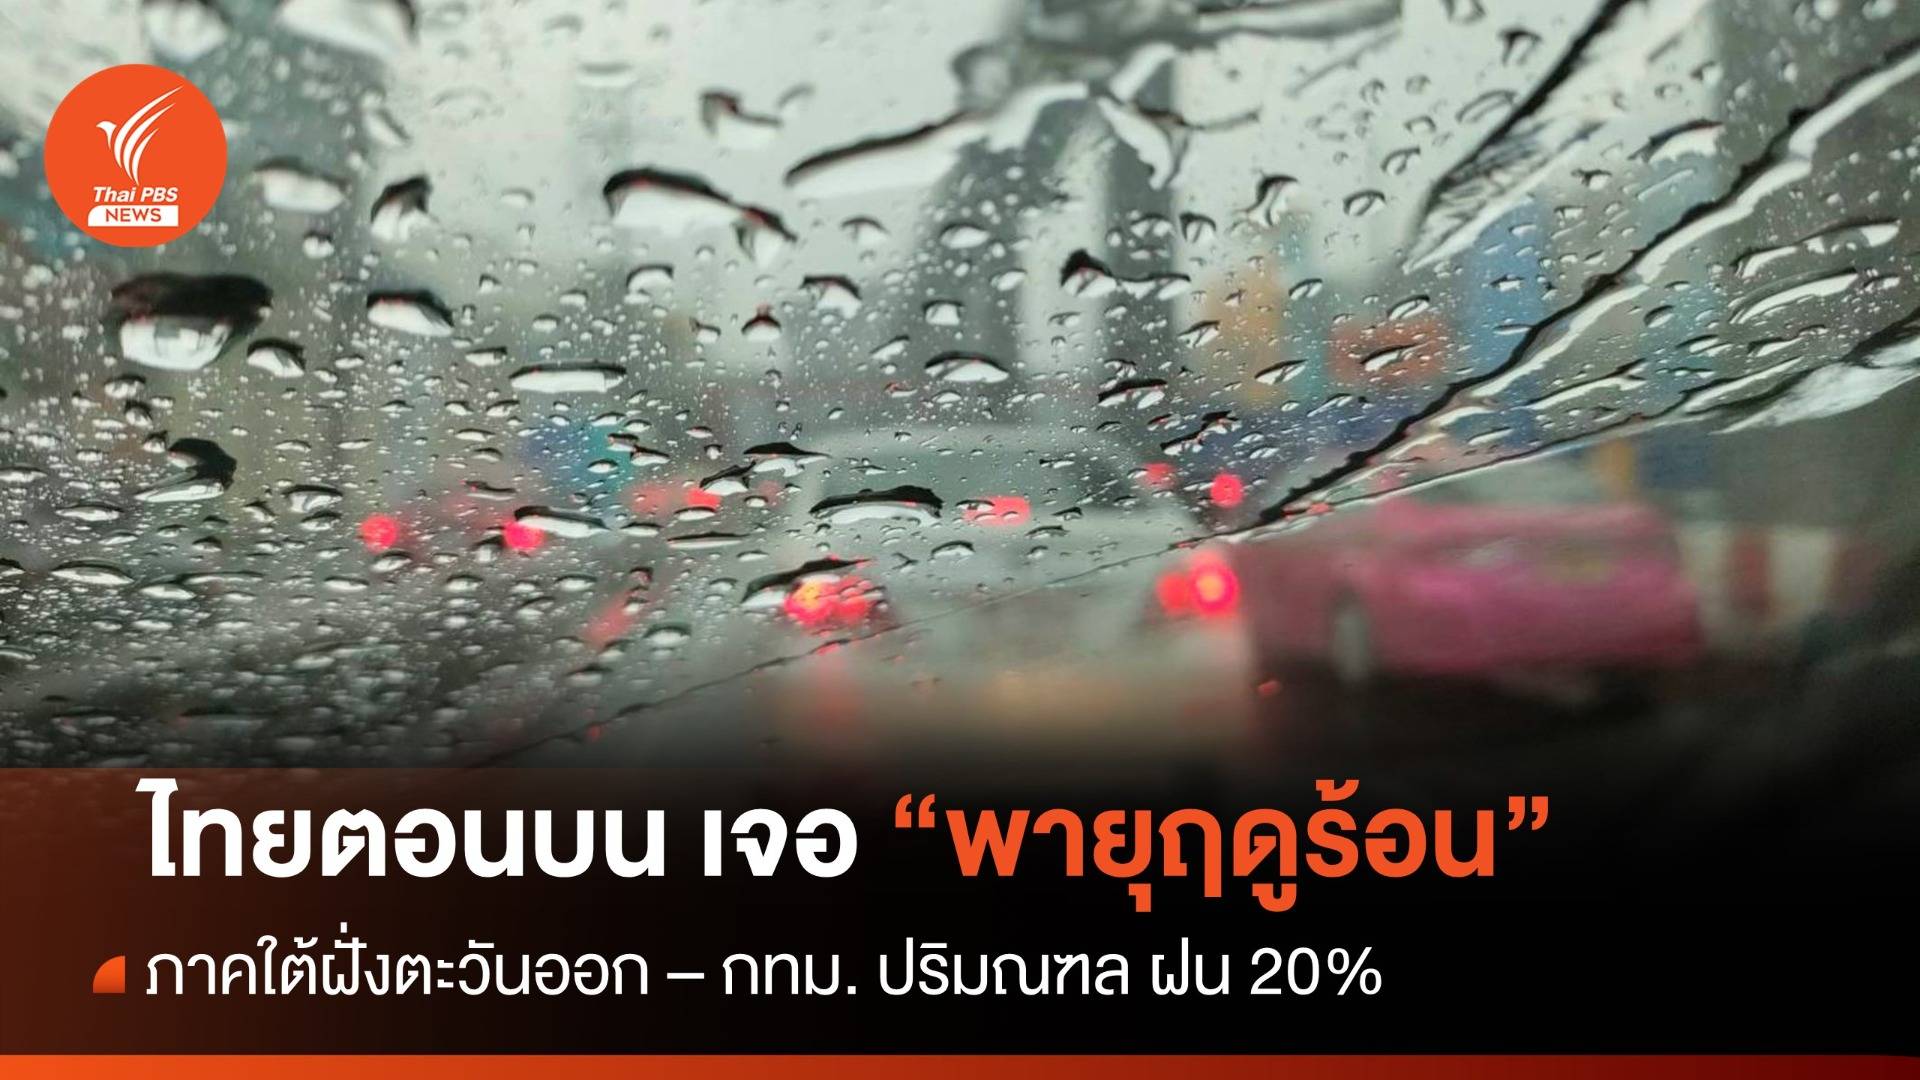 สภาพอากาศวันนี้ ไทยตอนบนเจอพายุฤดูร้อน - กทม.ฝน 20%